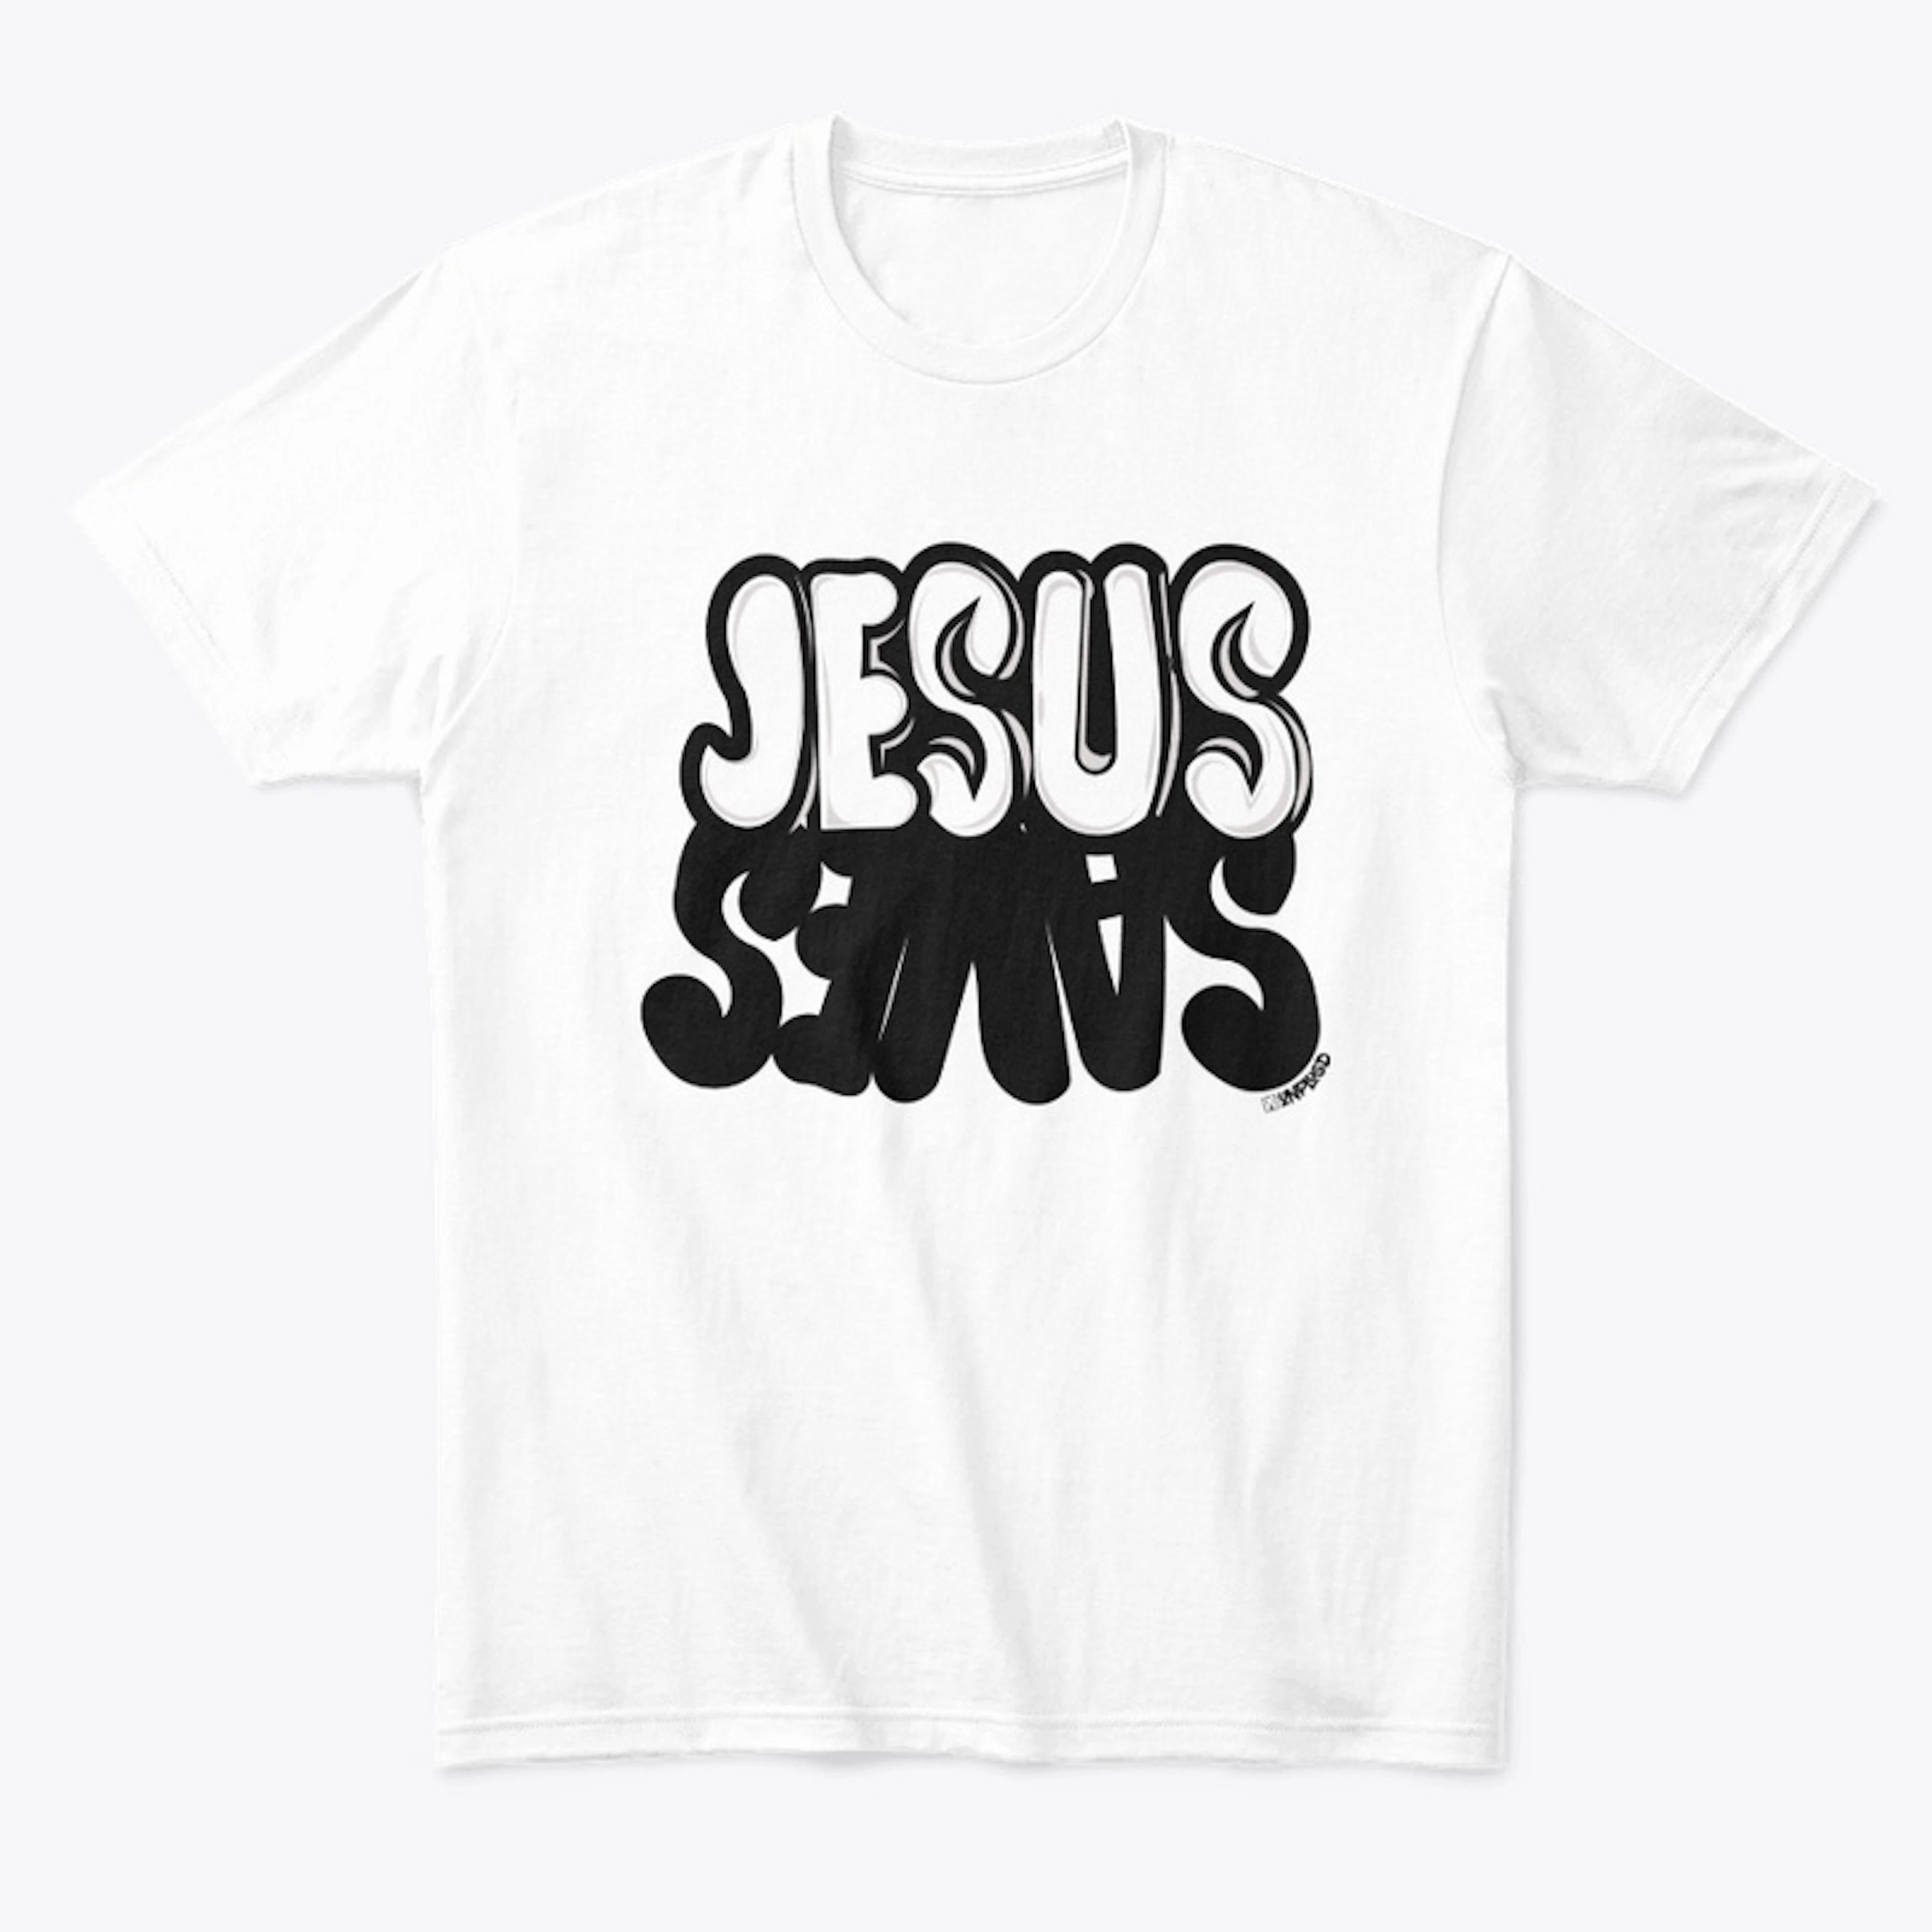 JESUS SAVES 1